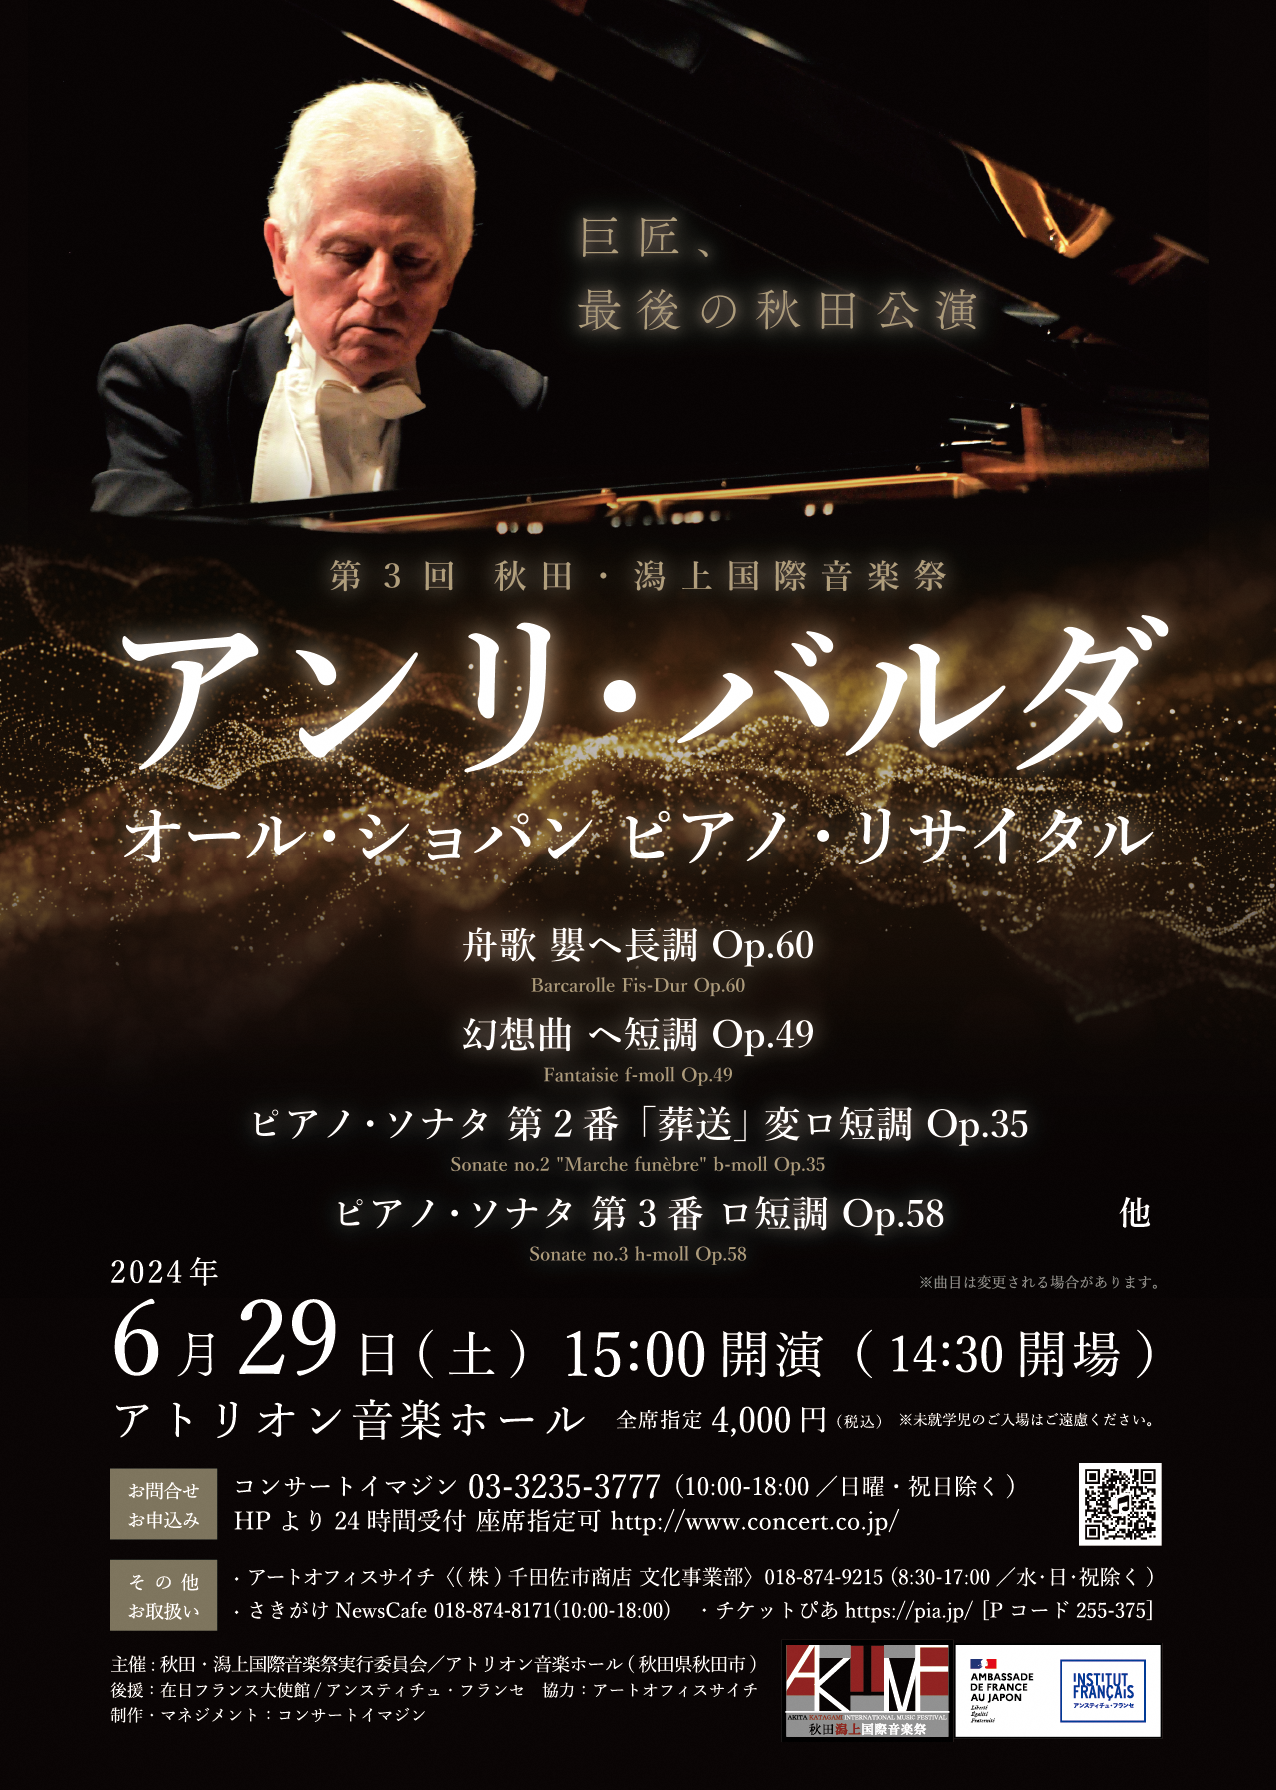 アンリ・バルダ　オールショパンピアノリサイタルが6月29日に開催されます。